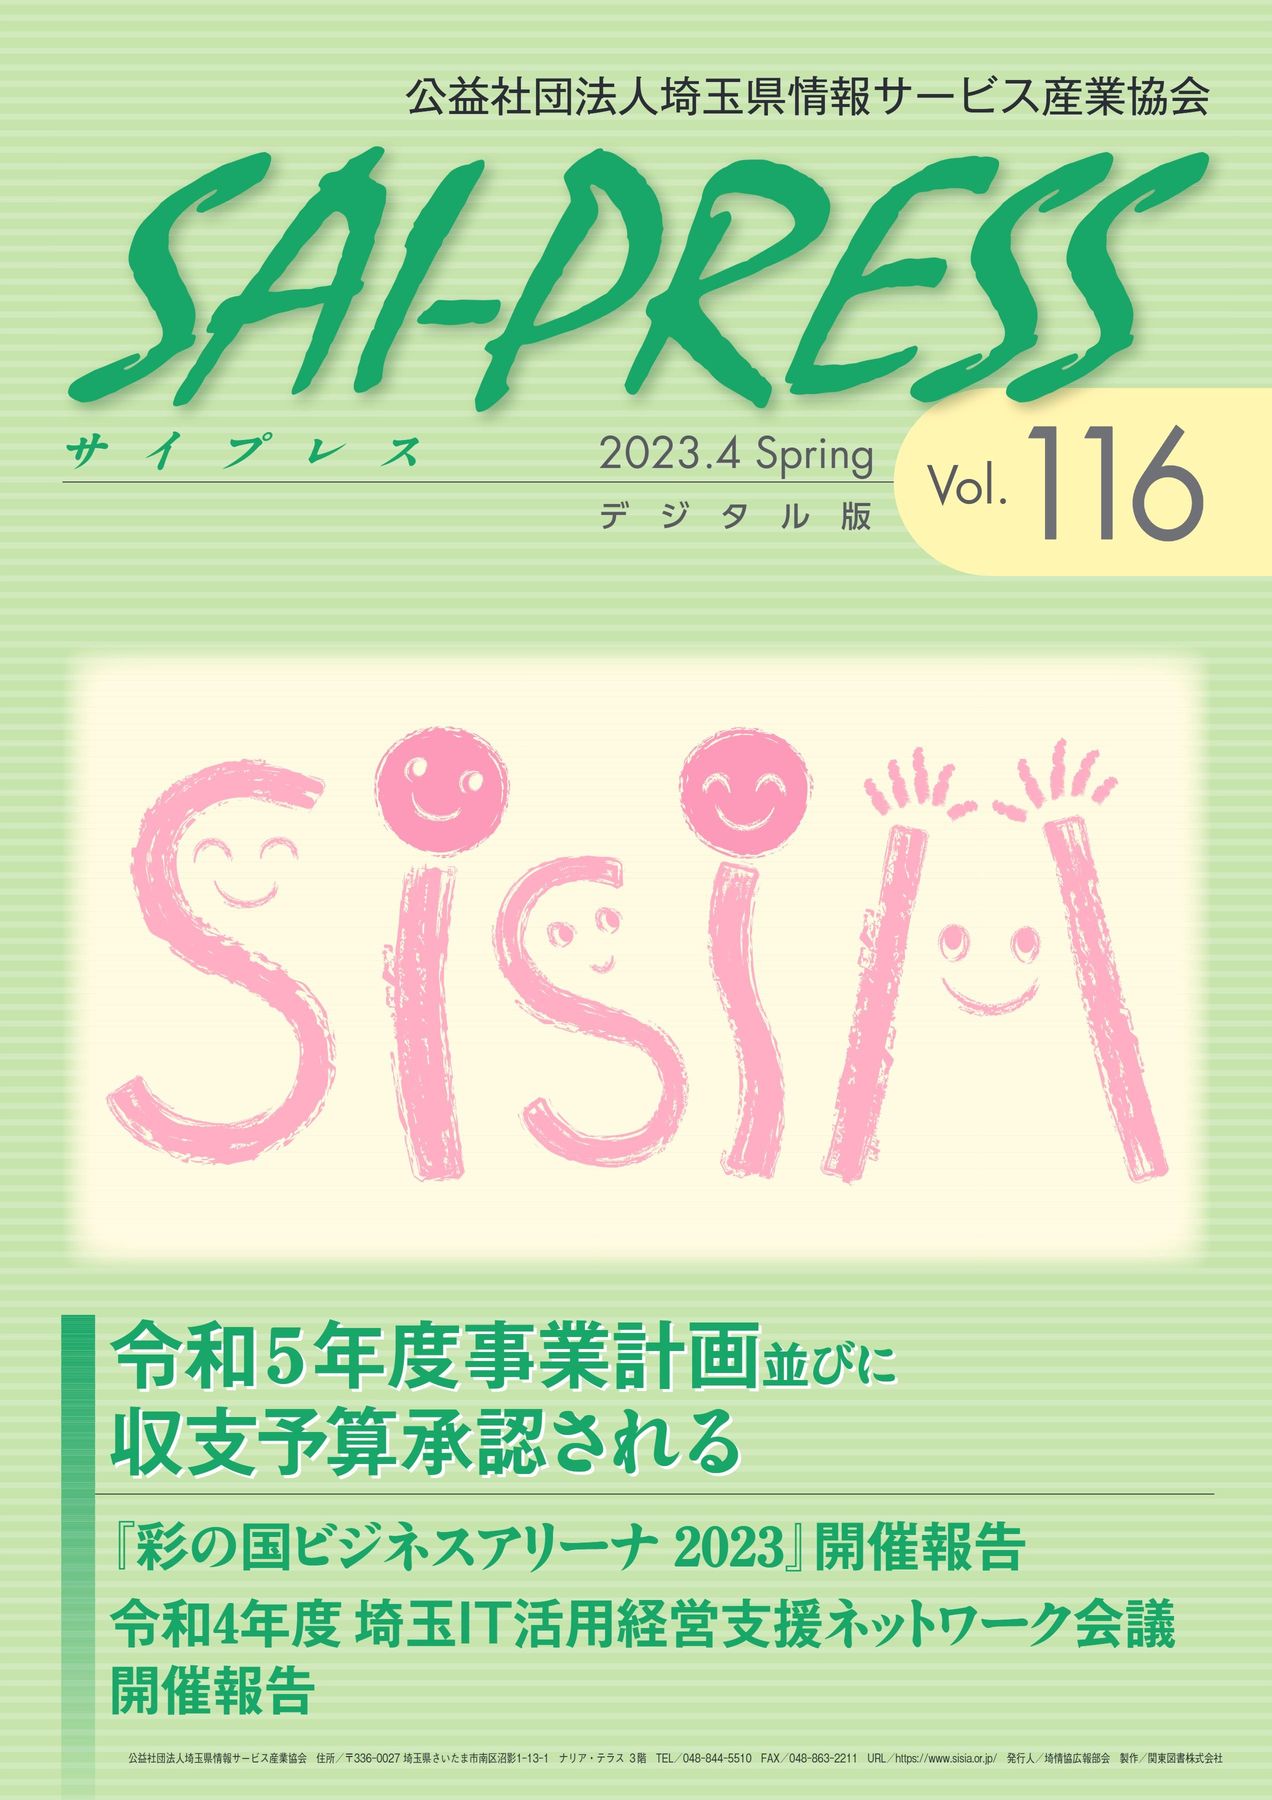 SAI-PRESS2021.7Summer